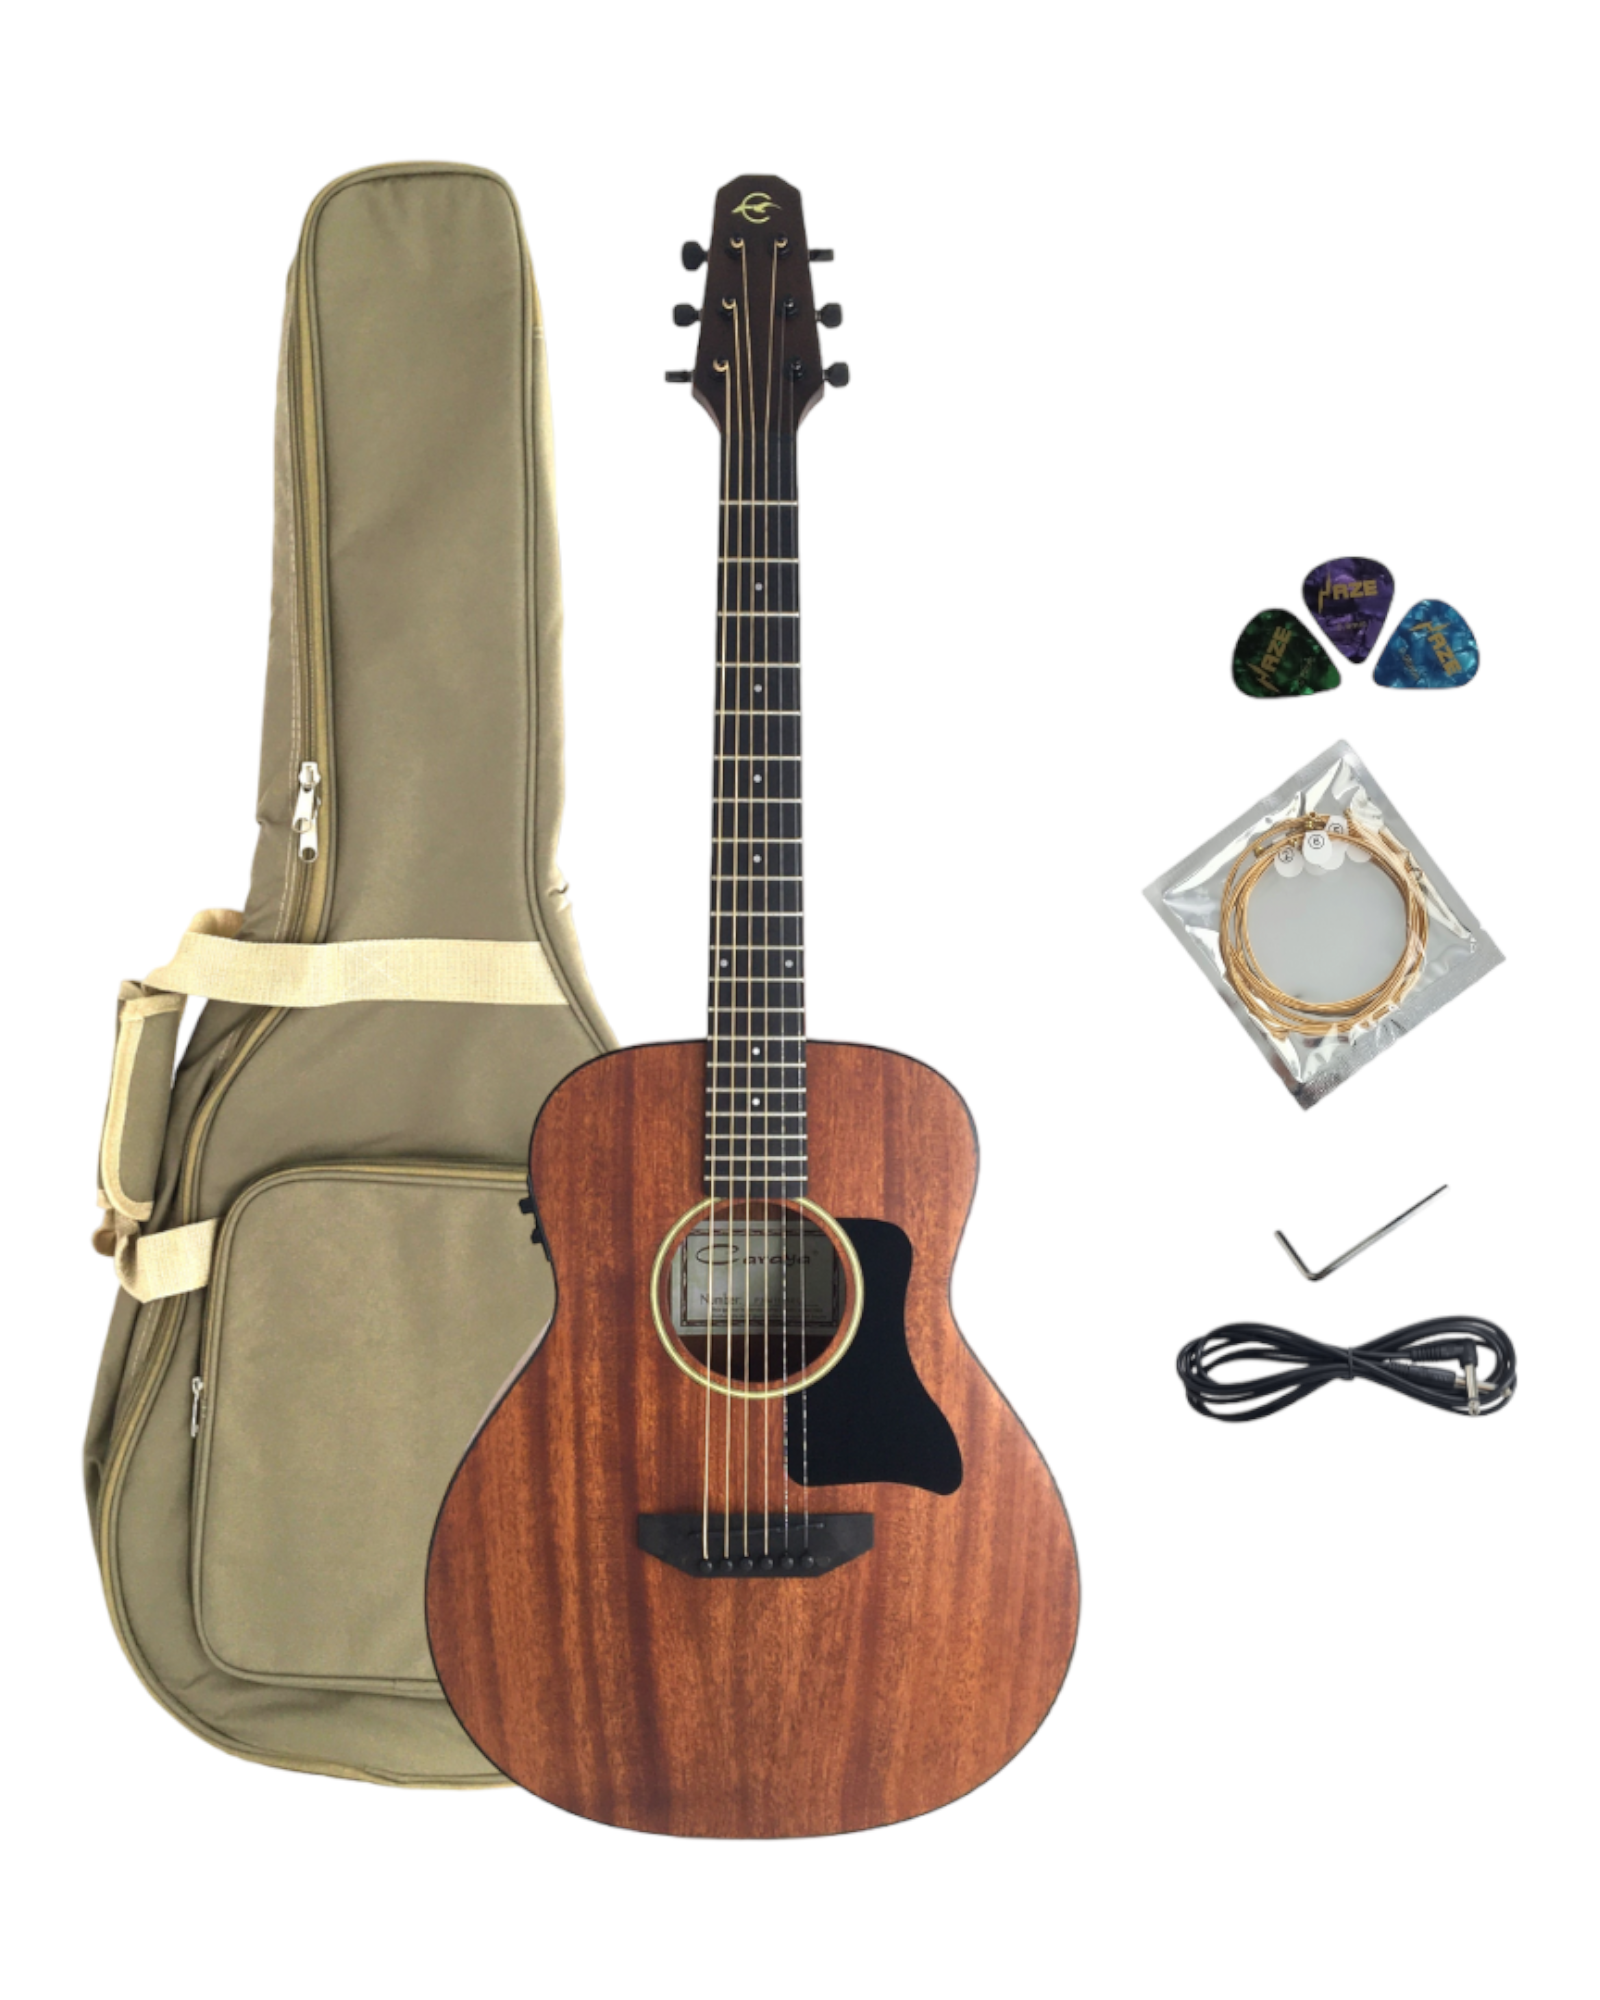 Caraya Solid Mahogany Built-In Pickups/Tuner Acoustic Guitar - Natural P304111SEQ